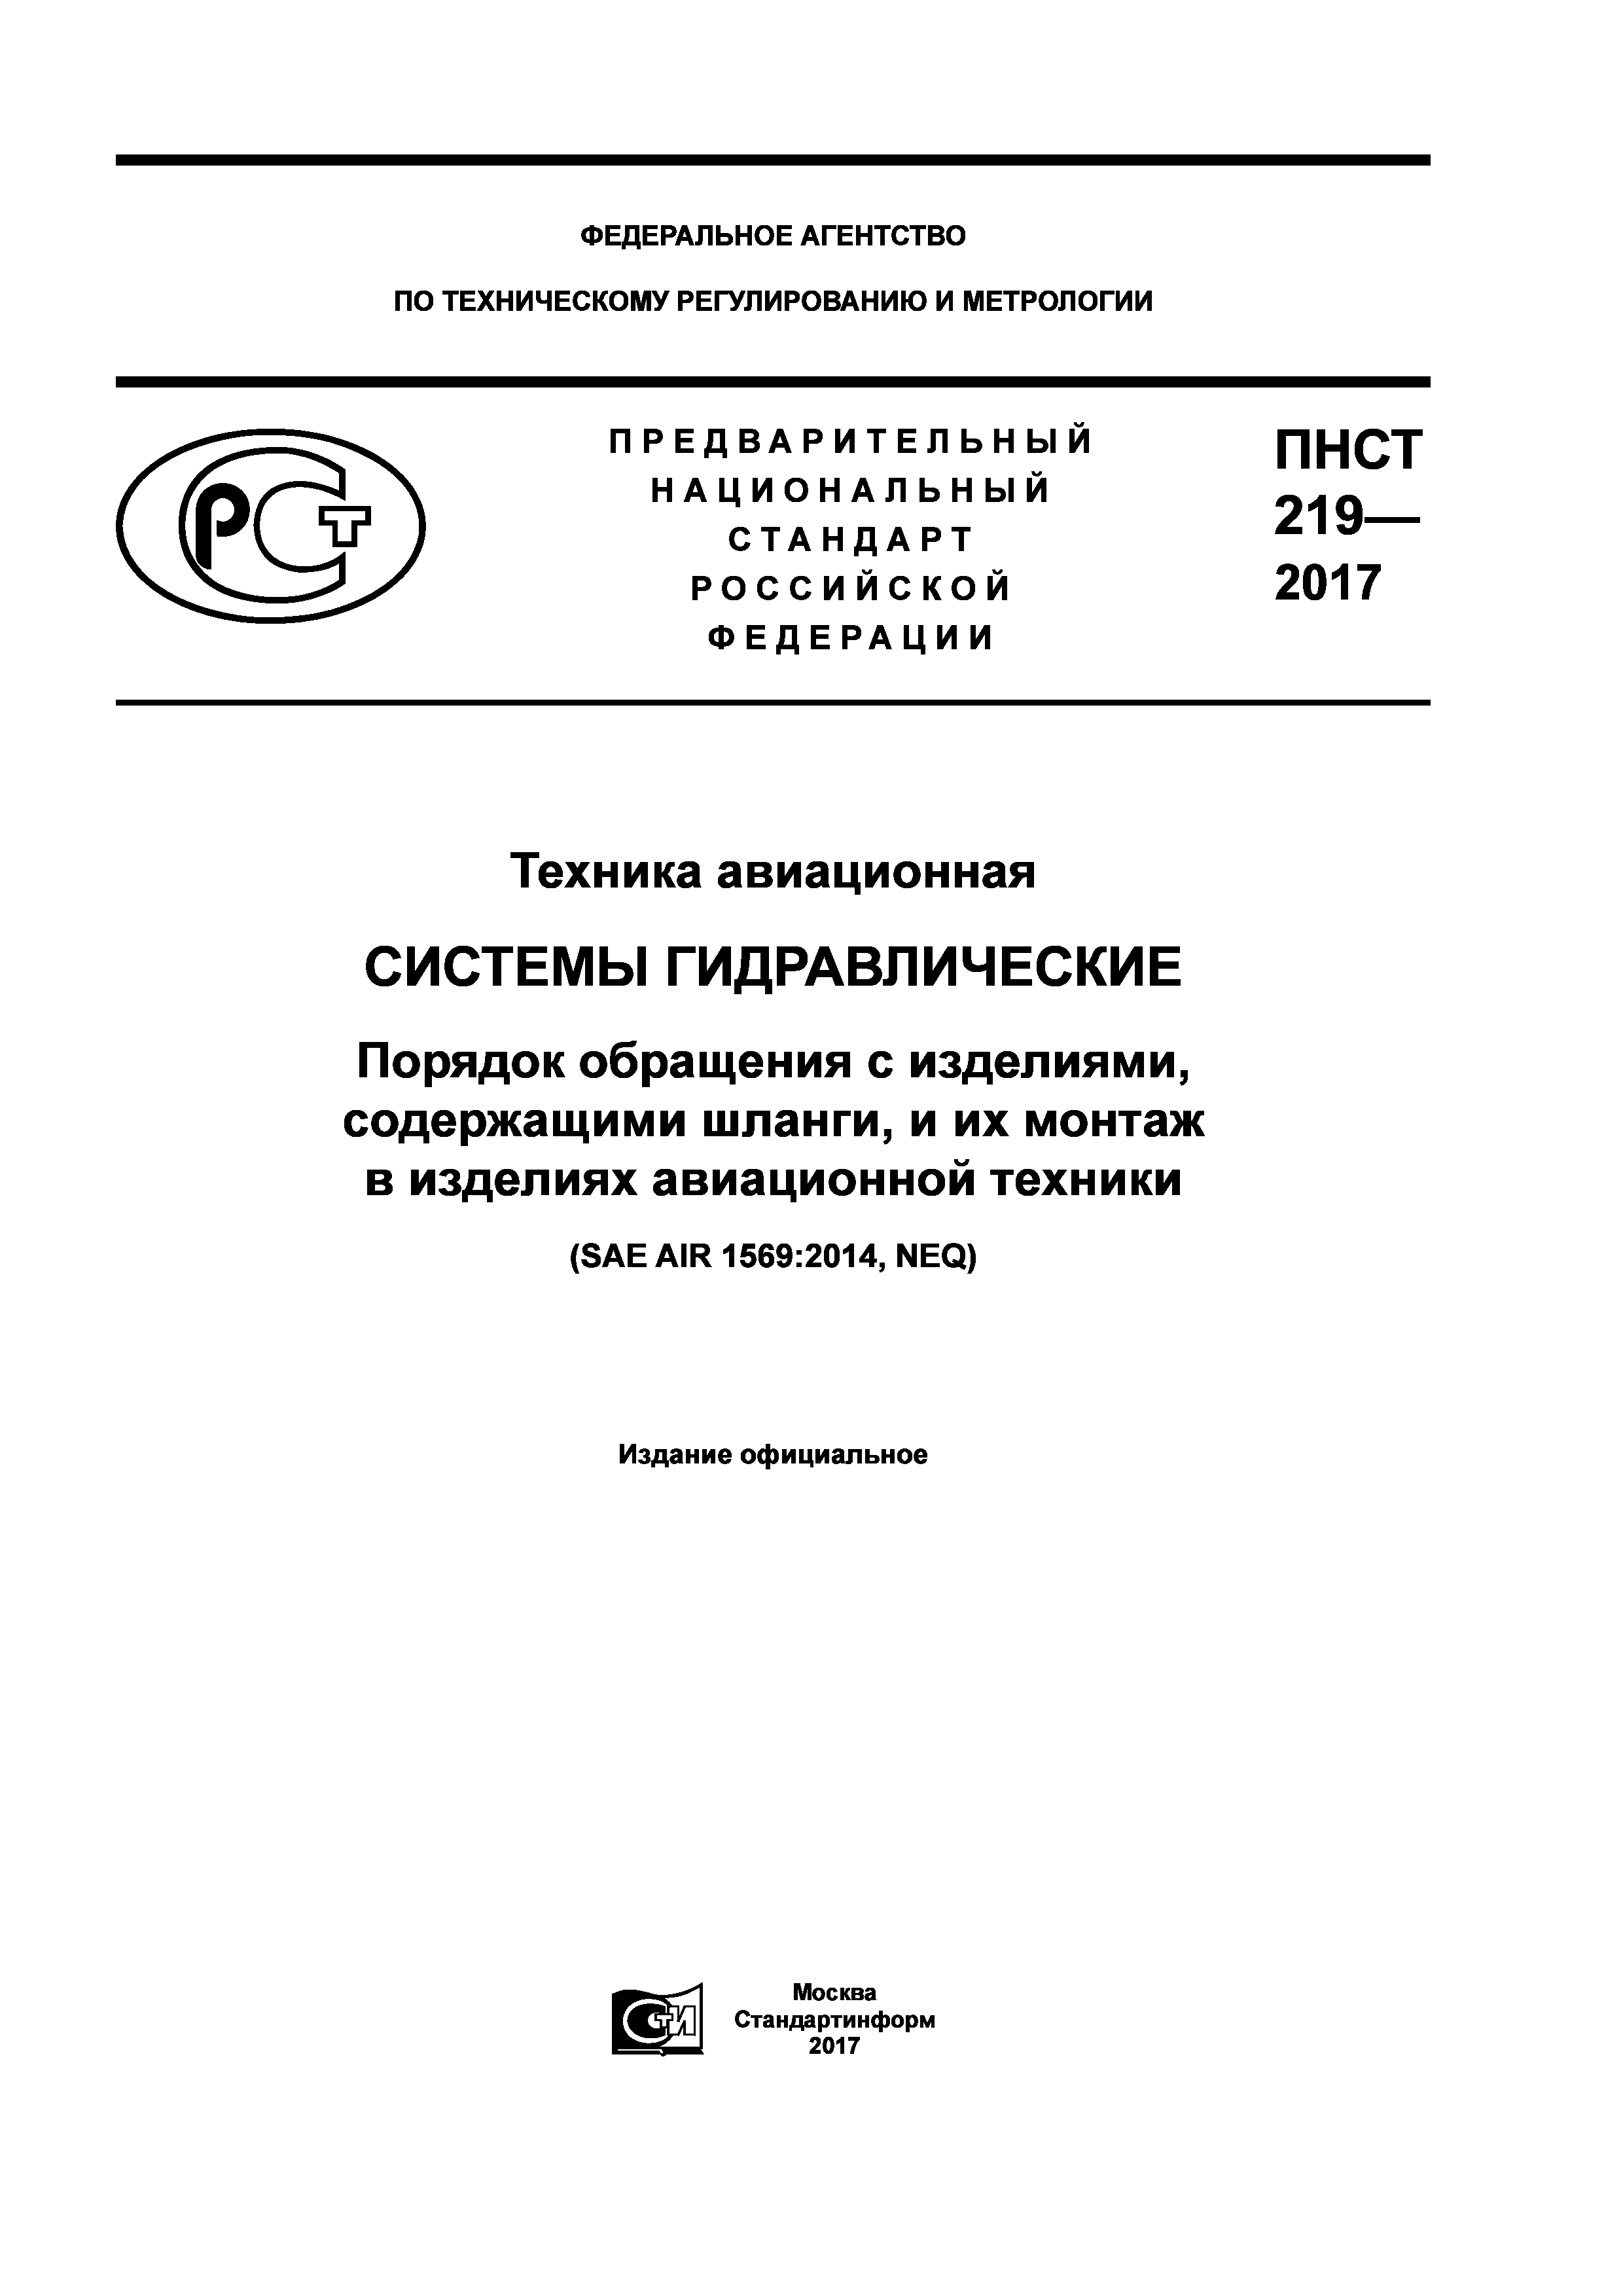 ПНСТ 219-2017